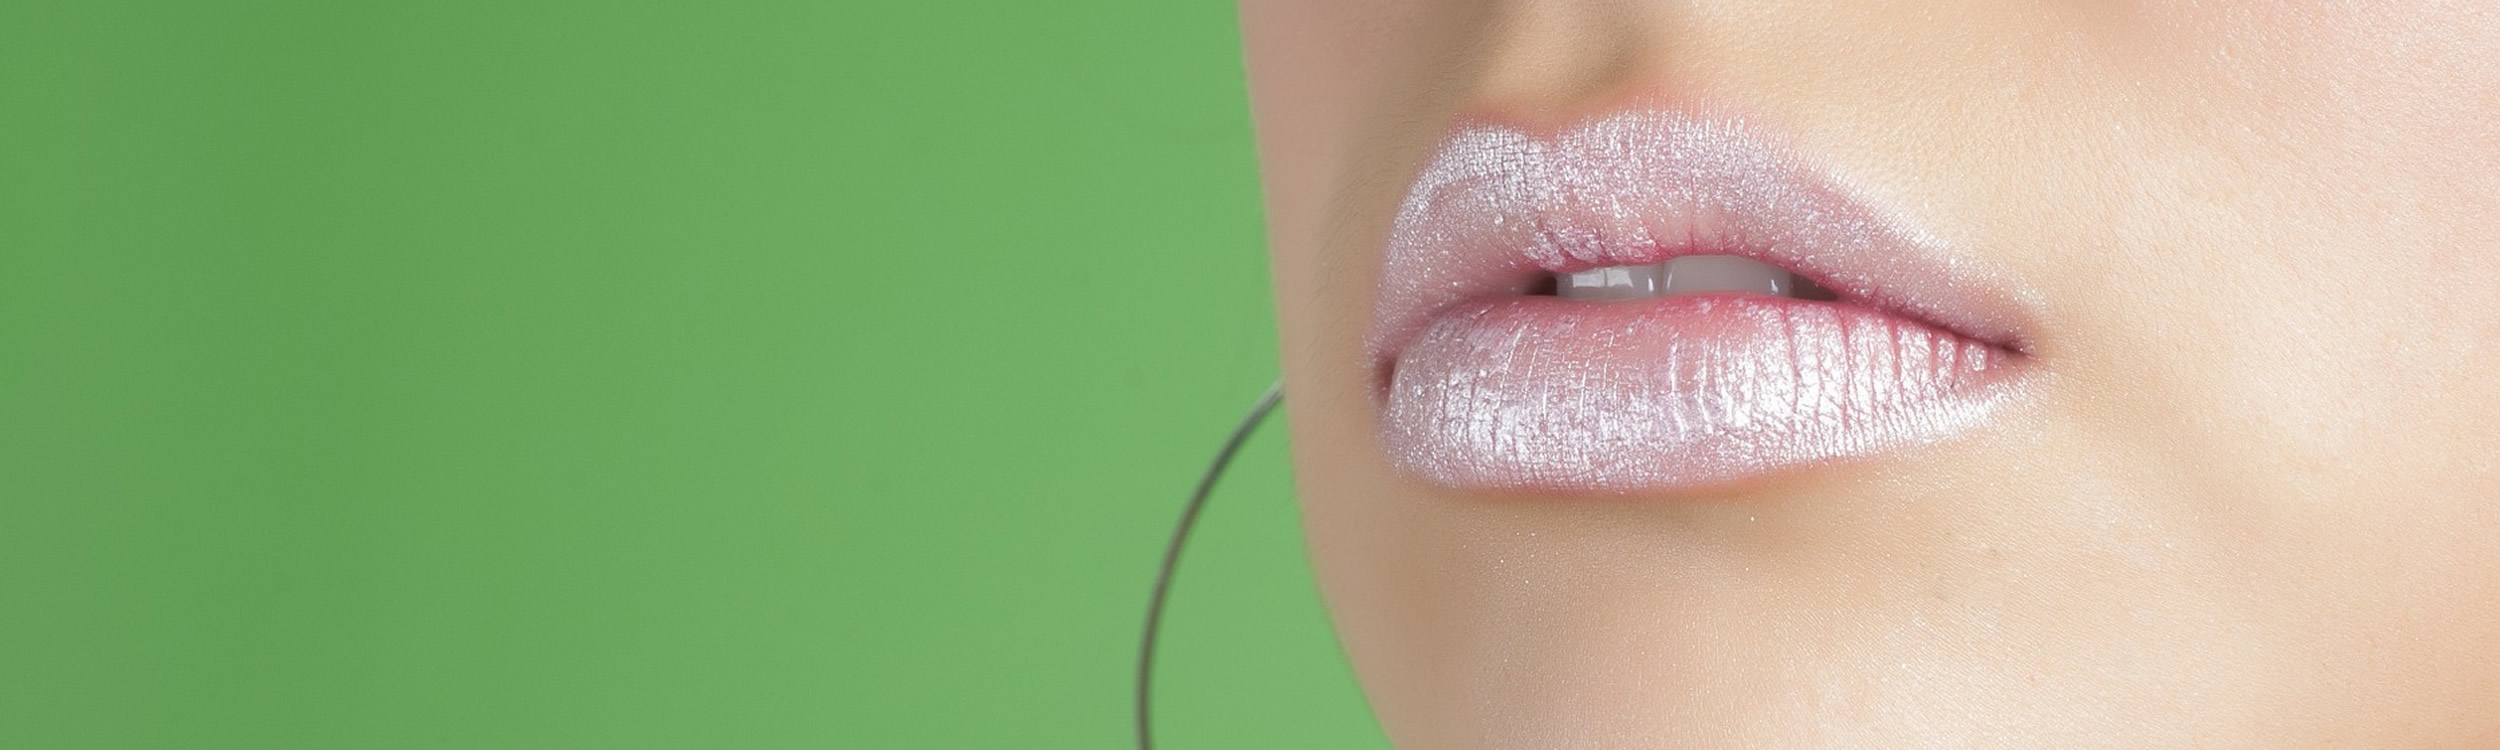 Lèvres gercées : quels soins apporter ?